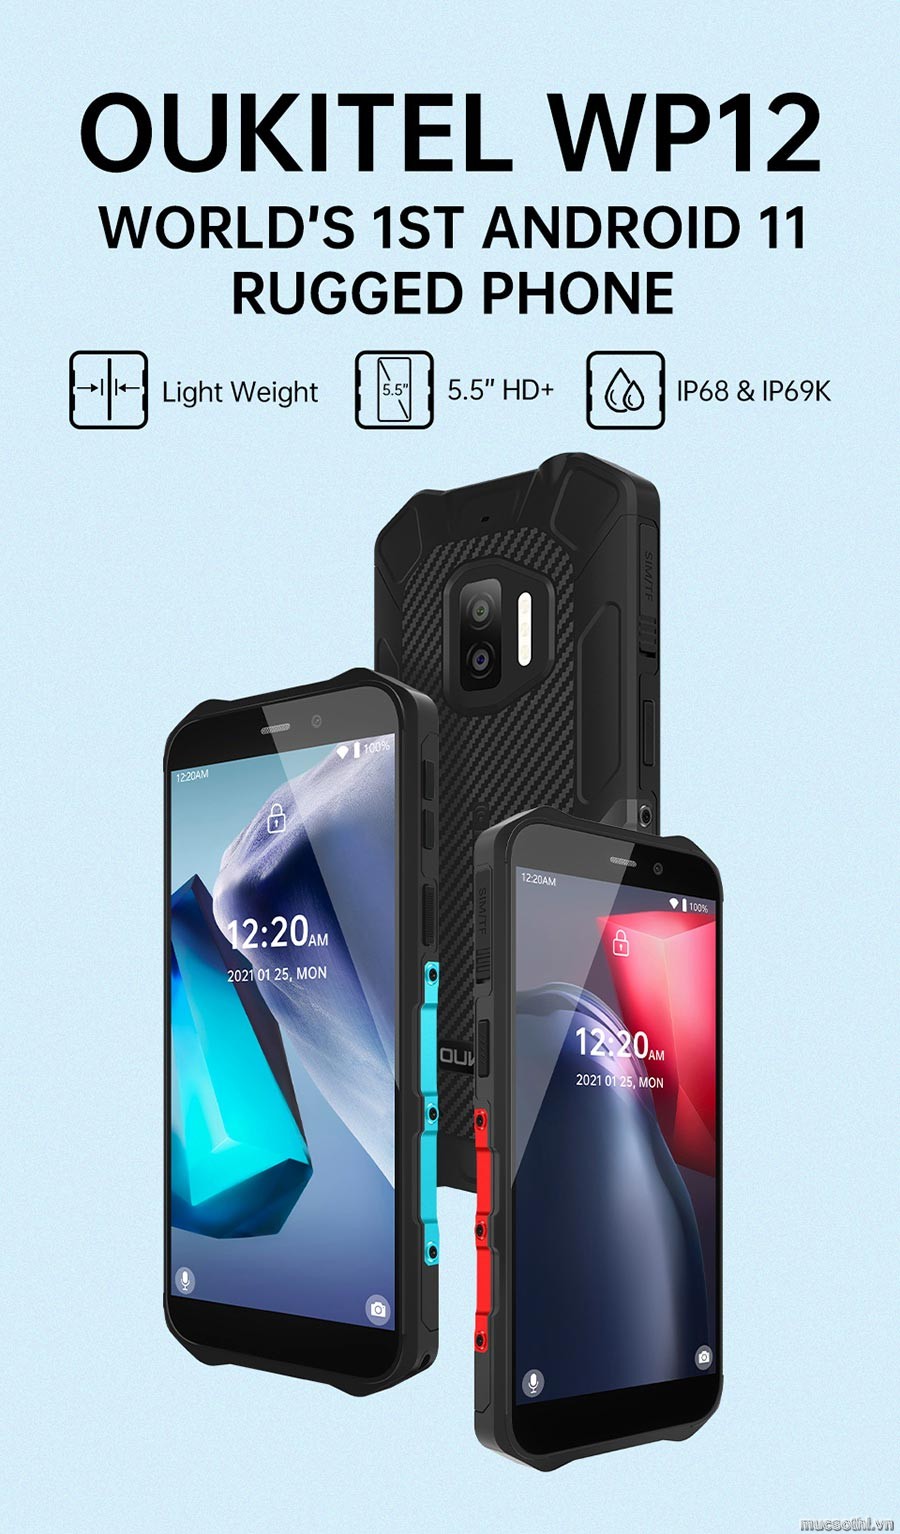 smartphonestore.vn - bán lẻ giá sỉ, online giá tốt smartphone siêu bền oukitel wp12 chính hãng - 09175.09195